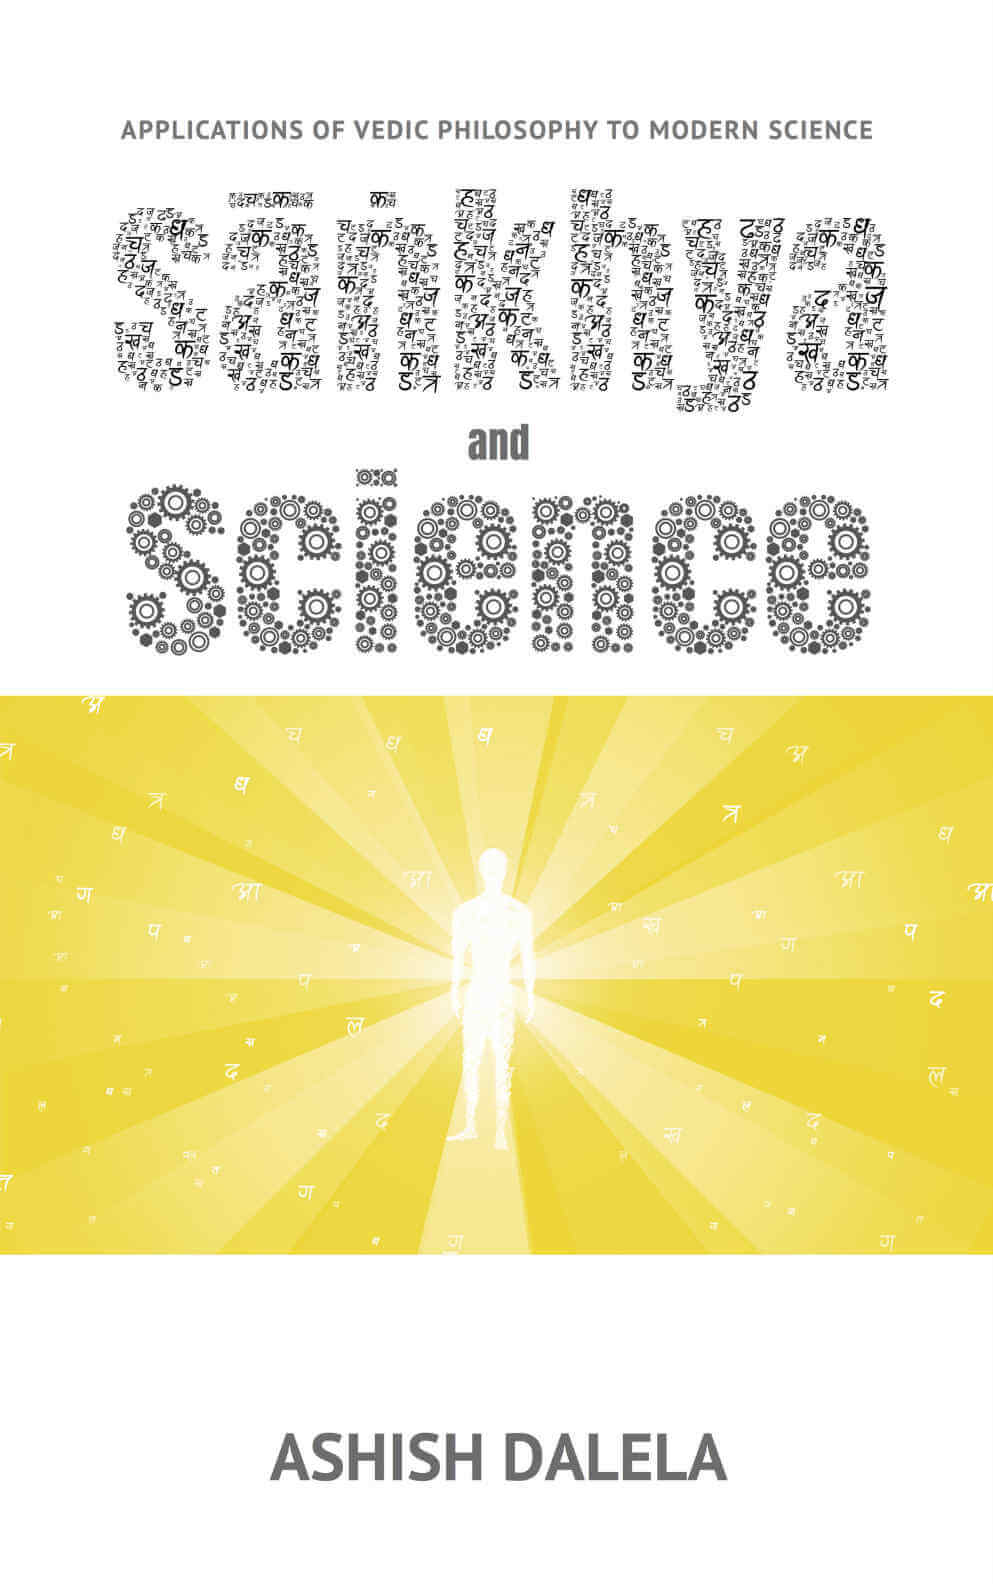 सांख्य और विज्ञान: आधुनिक विज्ञान के लिए वैदिक दर्शन के अनुप्रयोग